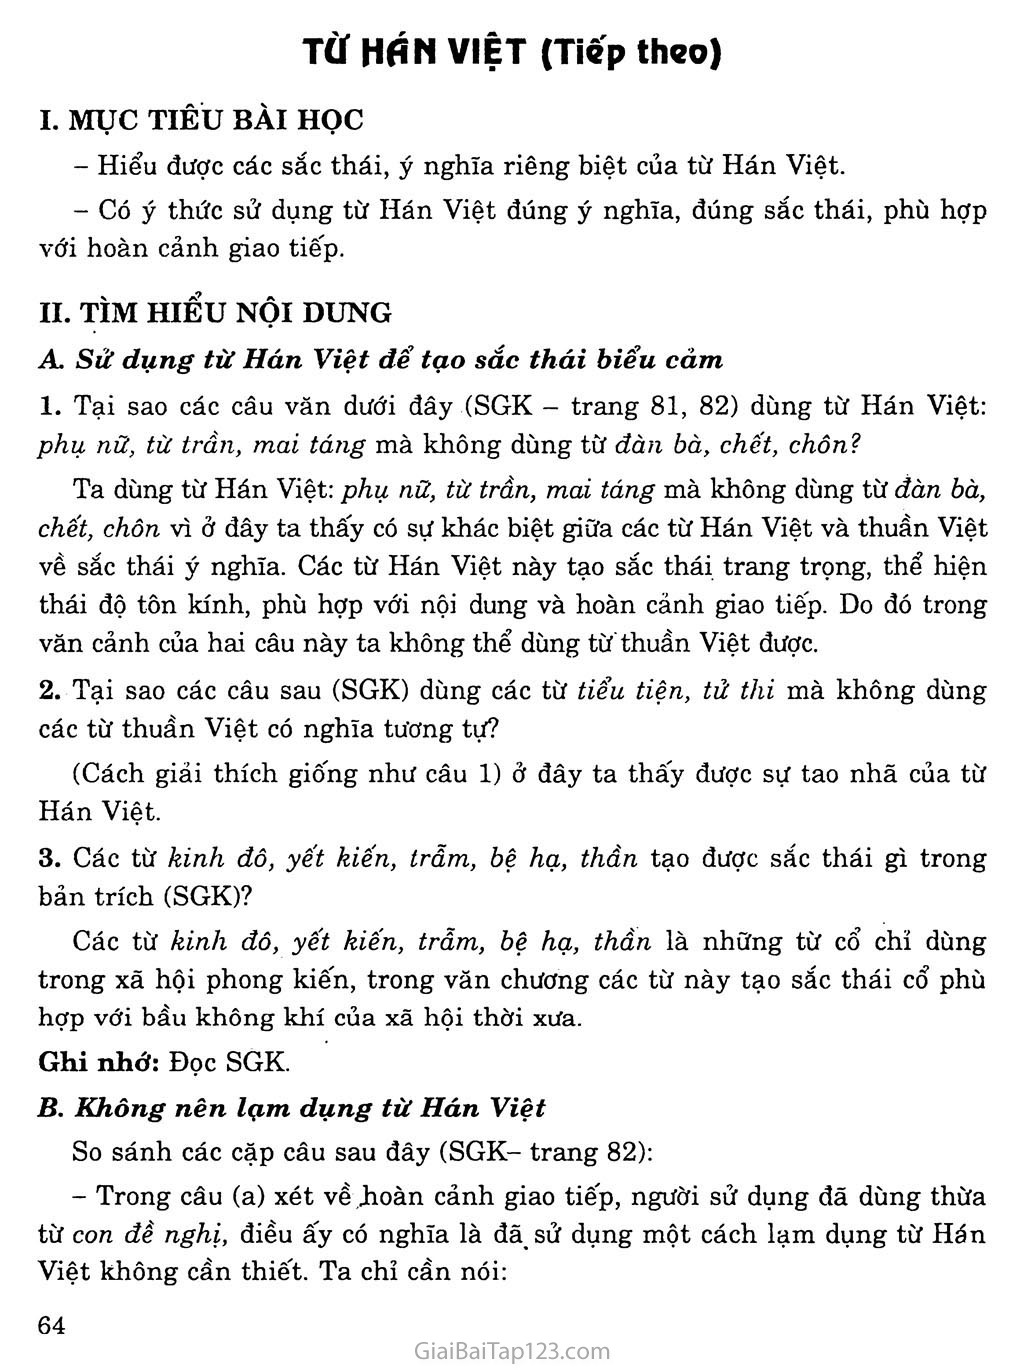 Từ Hán Việt (tiếp theo) trang 1